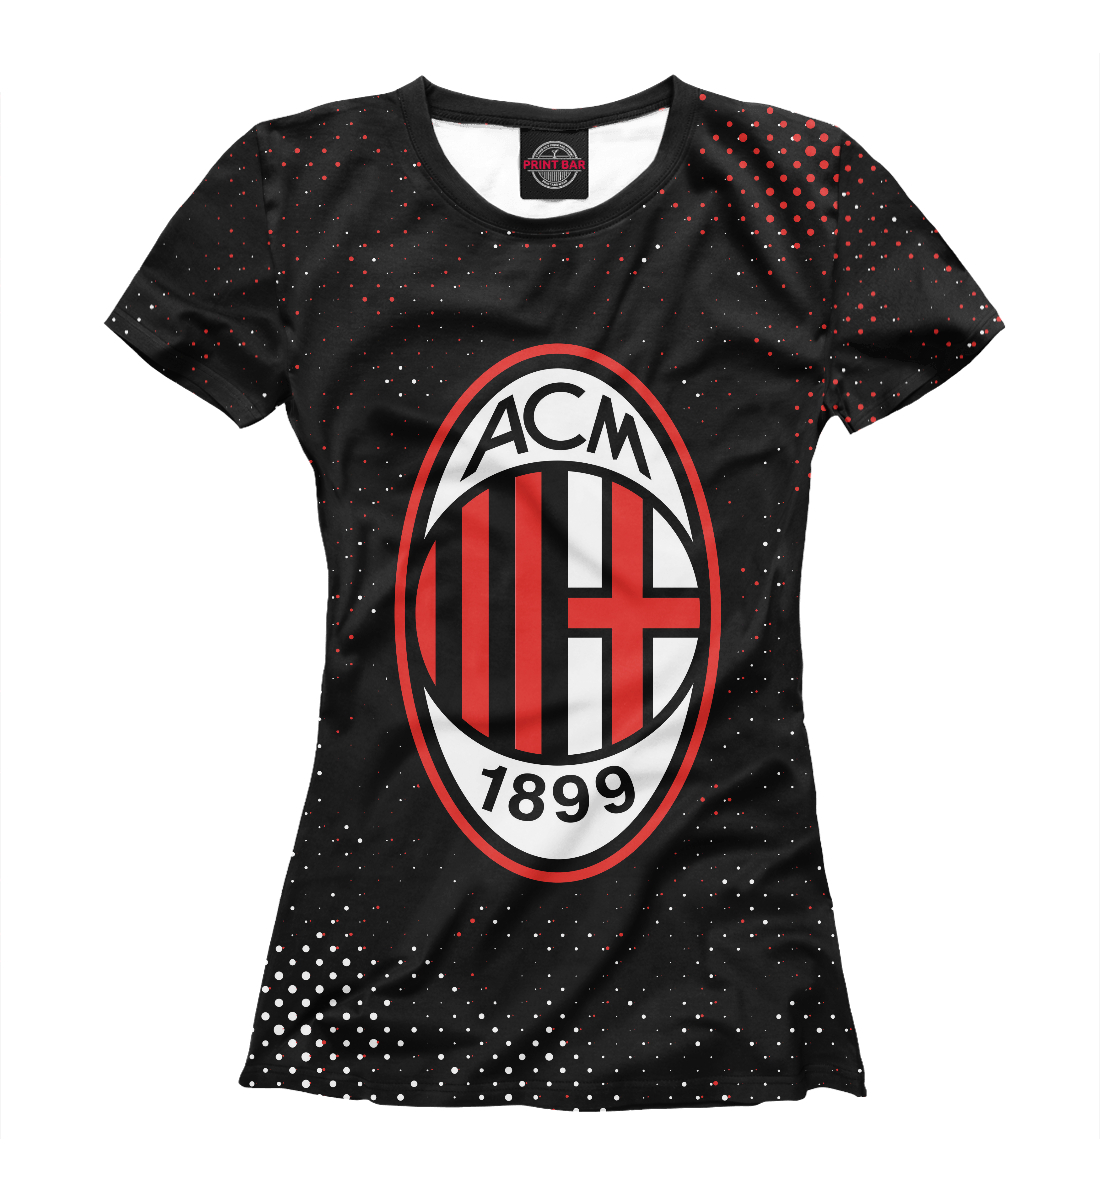 Детская Футболка AC Milan / Милан для девочек, артикул ACM-978207-fut-1mp